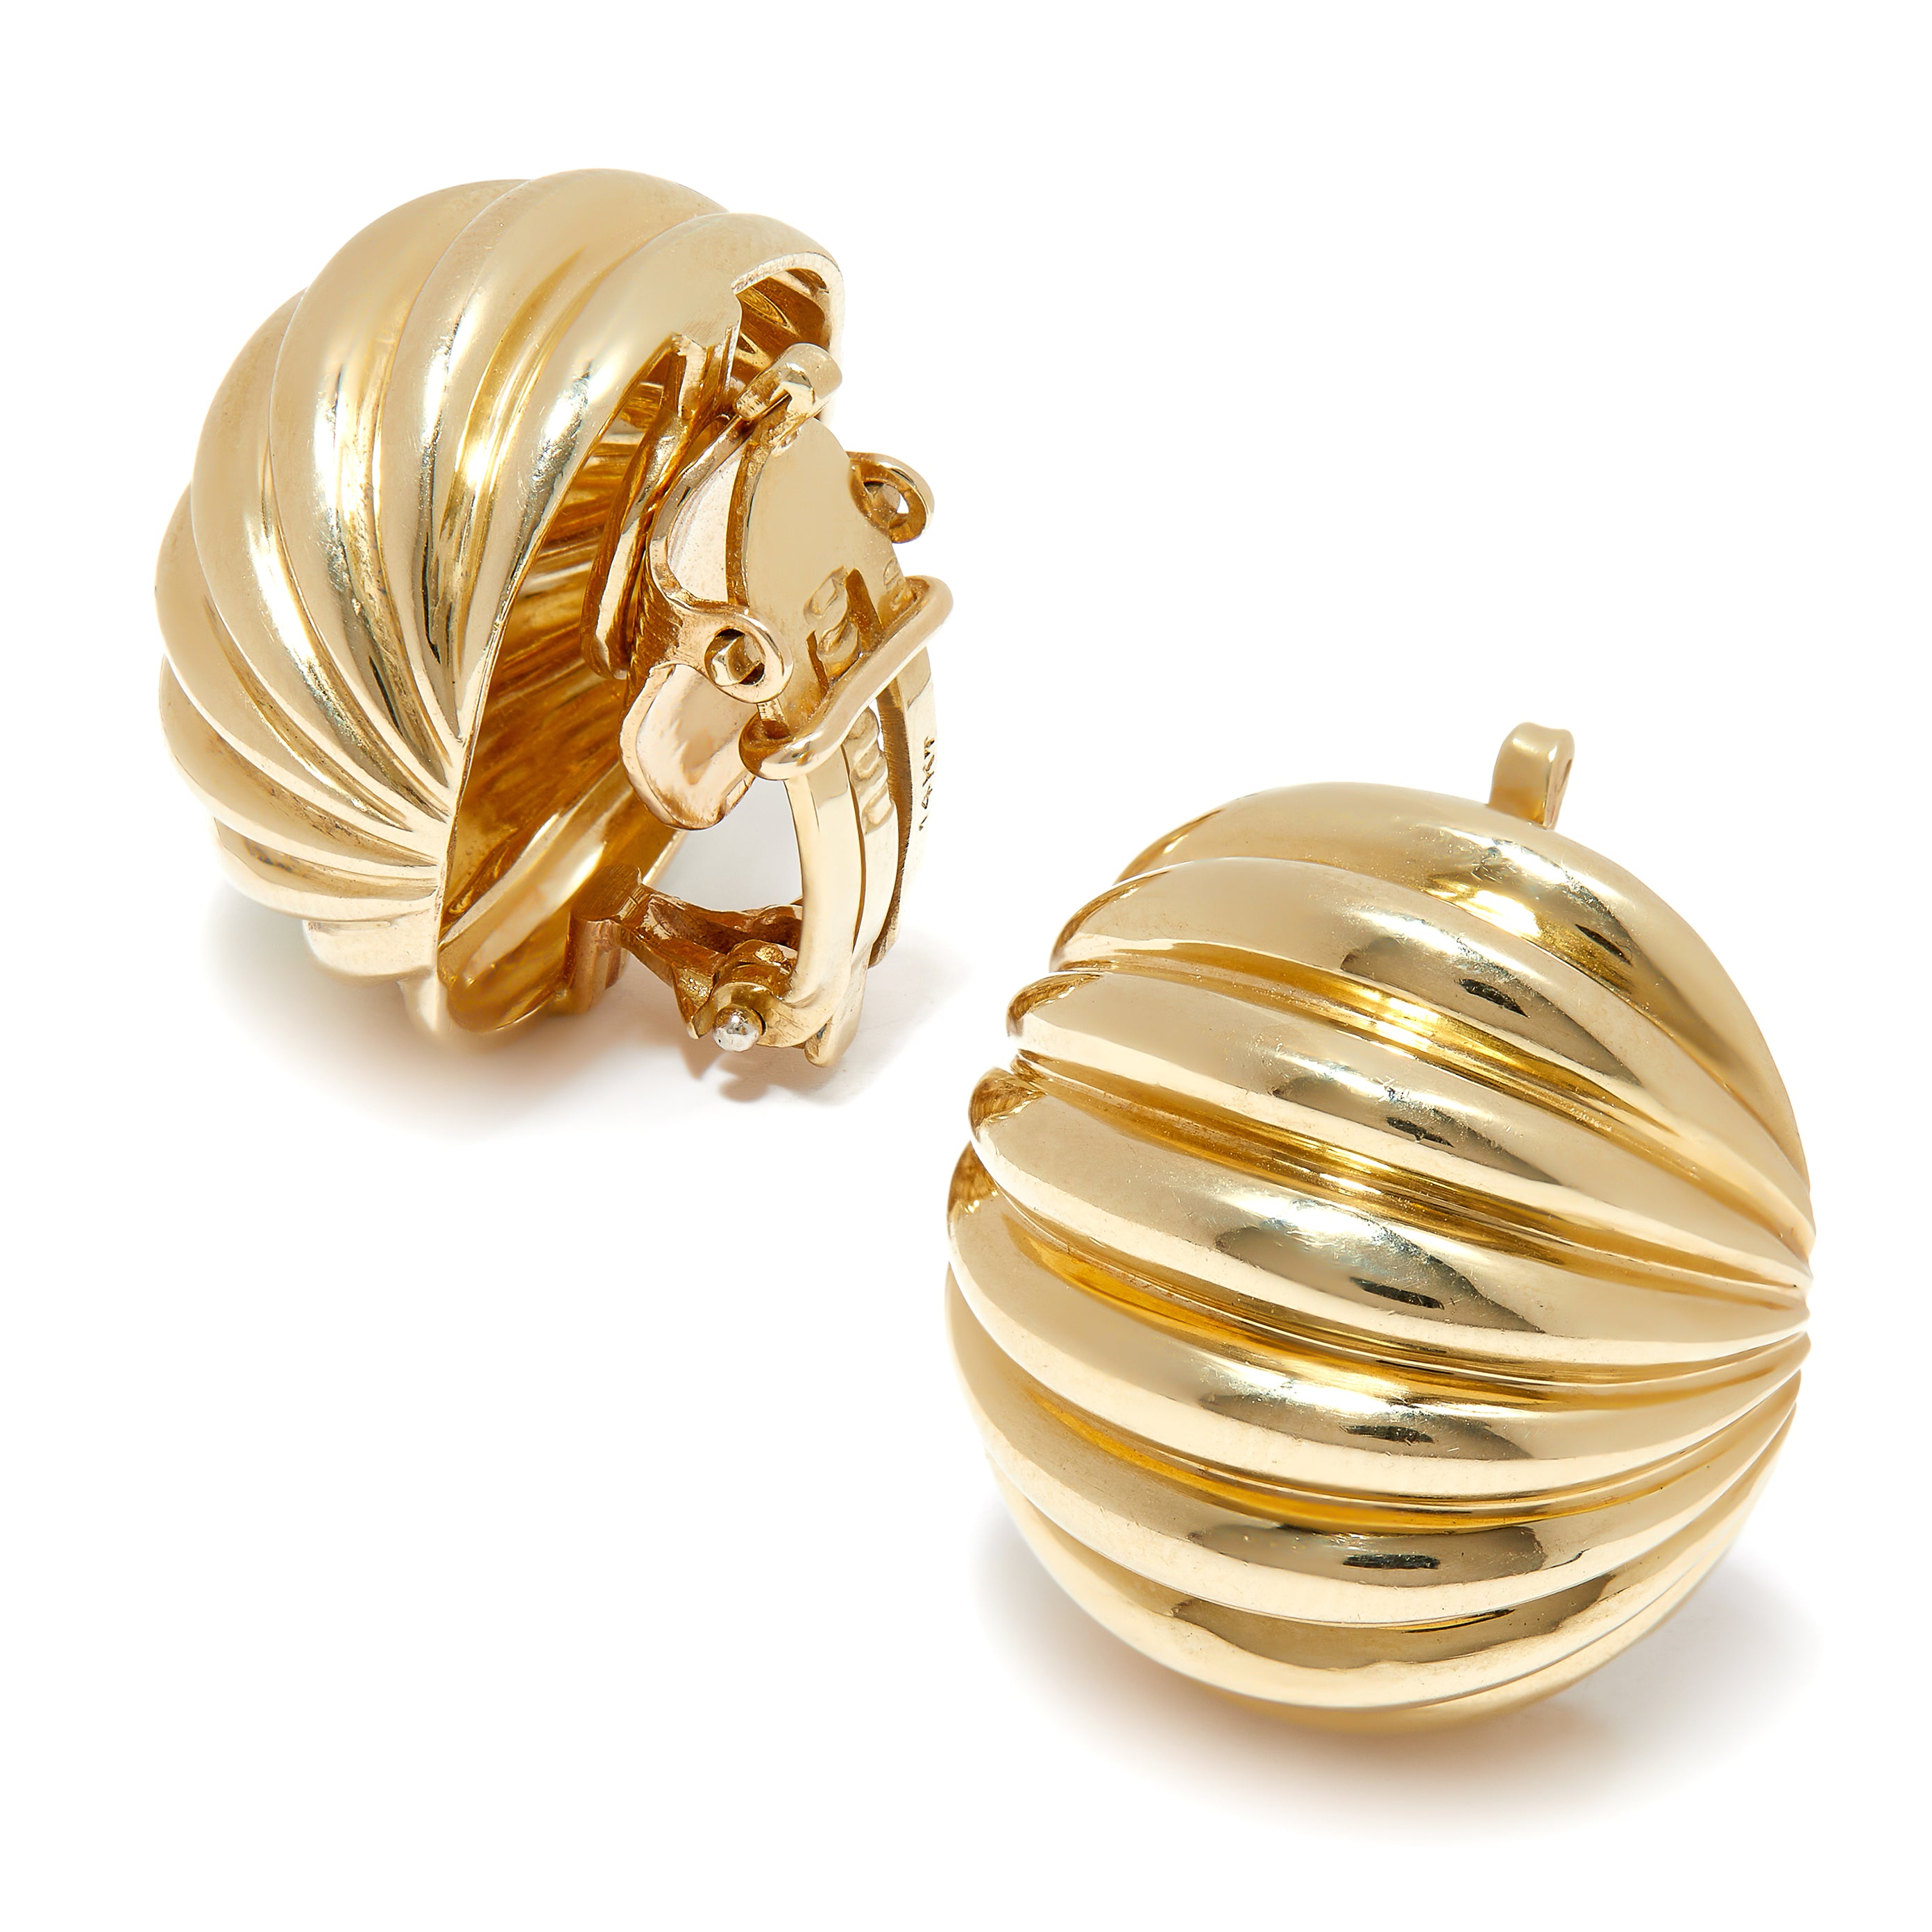 Vintage 14ct gold huggie earrings. 